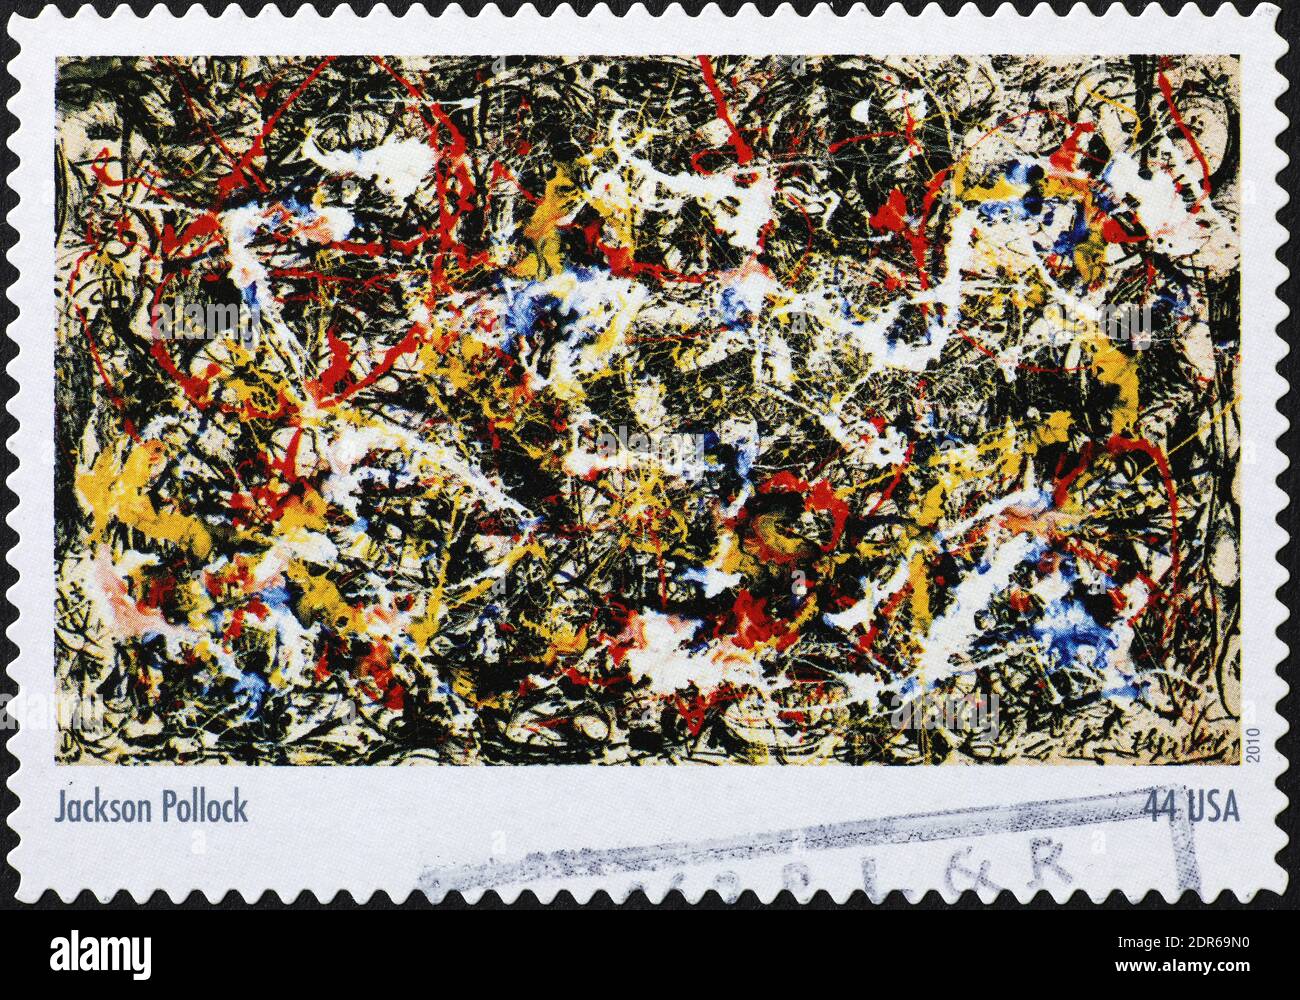 Konvergenz von Jackson Pollock auf amerikanischer Briefmarke Stockfoto